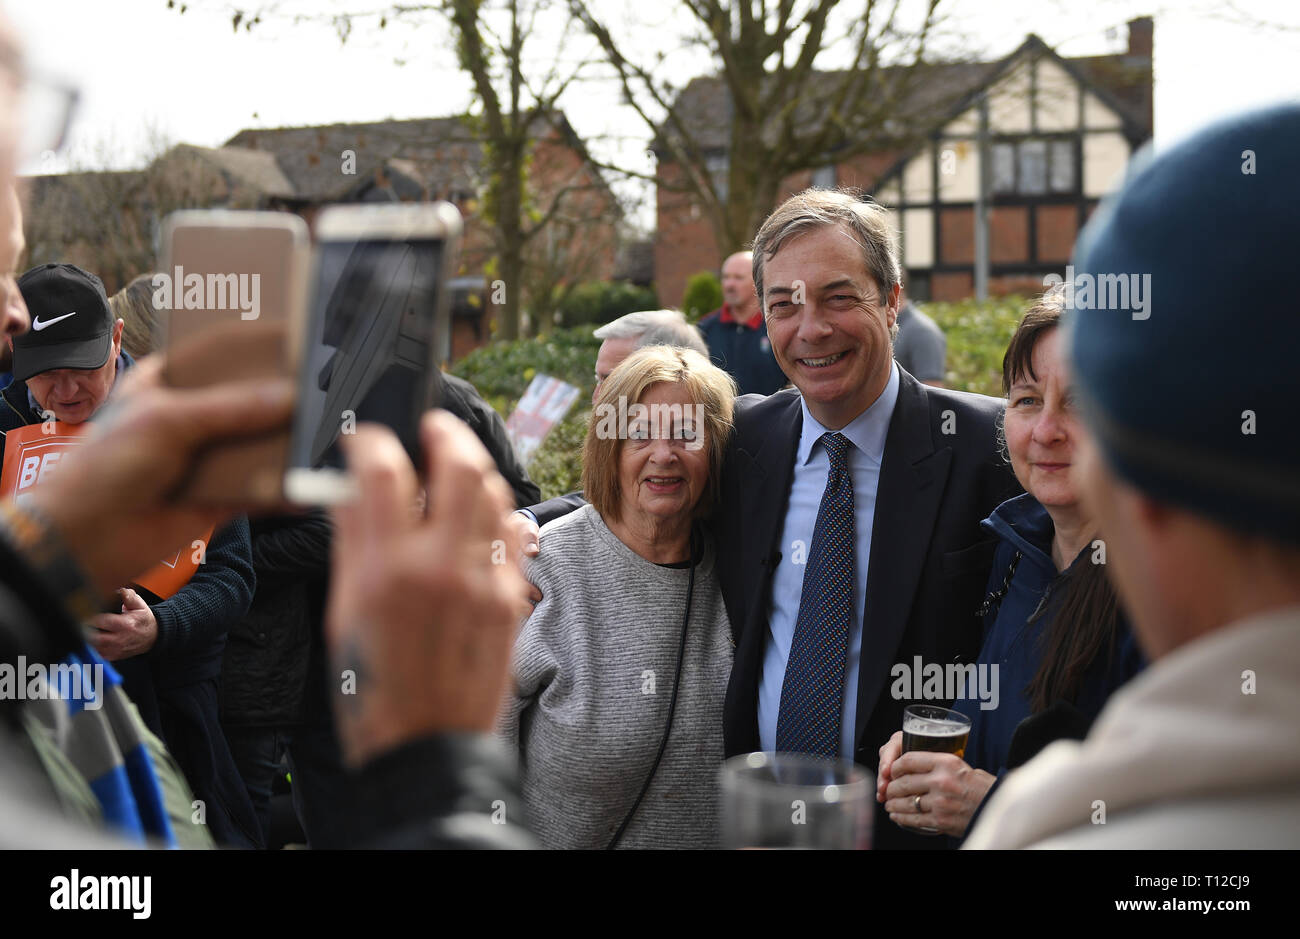 El ex dirigente UKIP Nigel Farage posa para las fotos durante la pausa del almuerzo de la marcha a abandonar la protesta en Nuthall, Nottingham en su camino a Londres durante un período de 14 días, llegando a la capital el 29 de marzo, en un mitin masivo tendrá lugar en la Plaza del Parlamento. Foto de stock